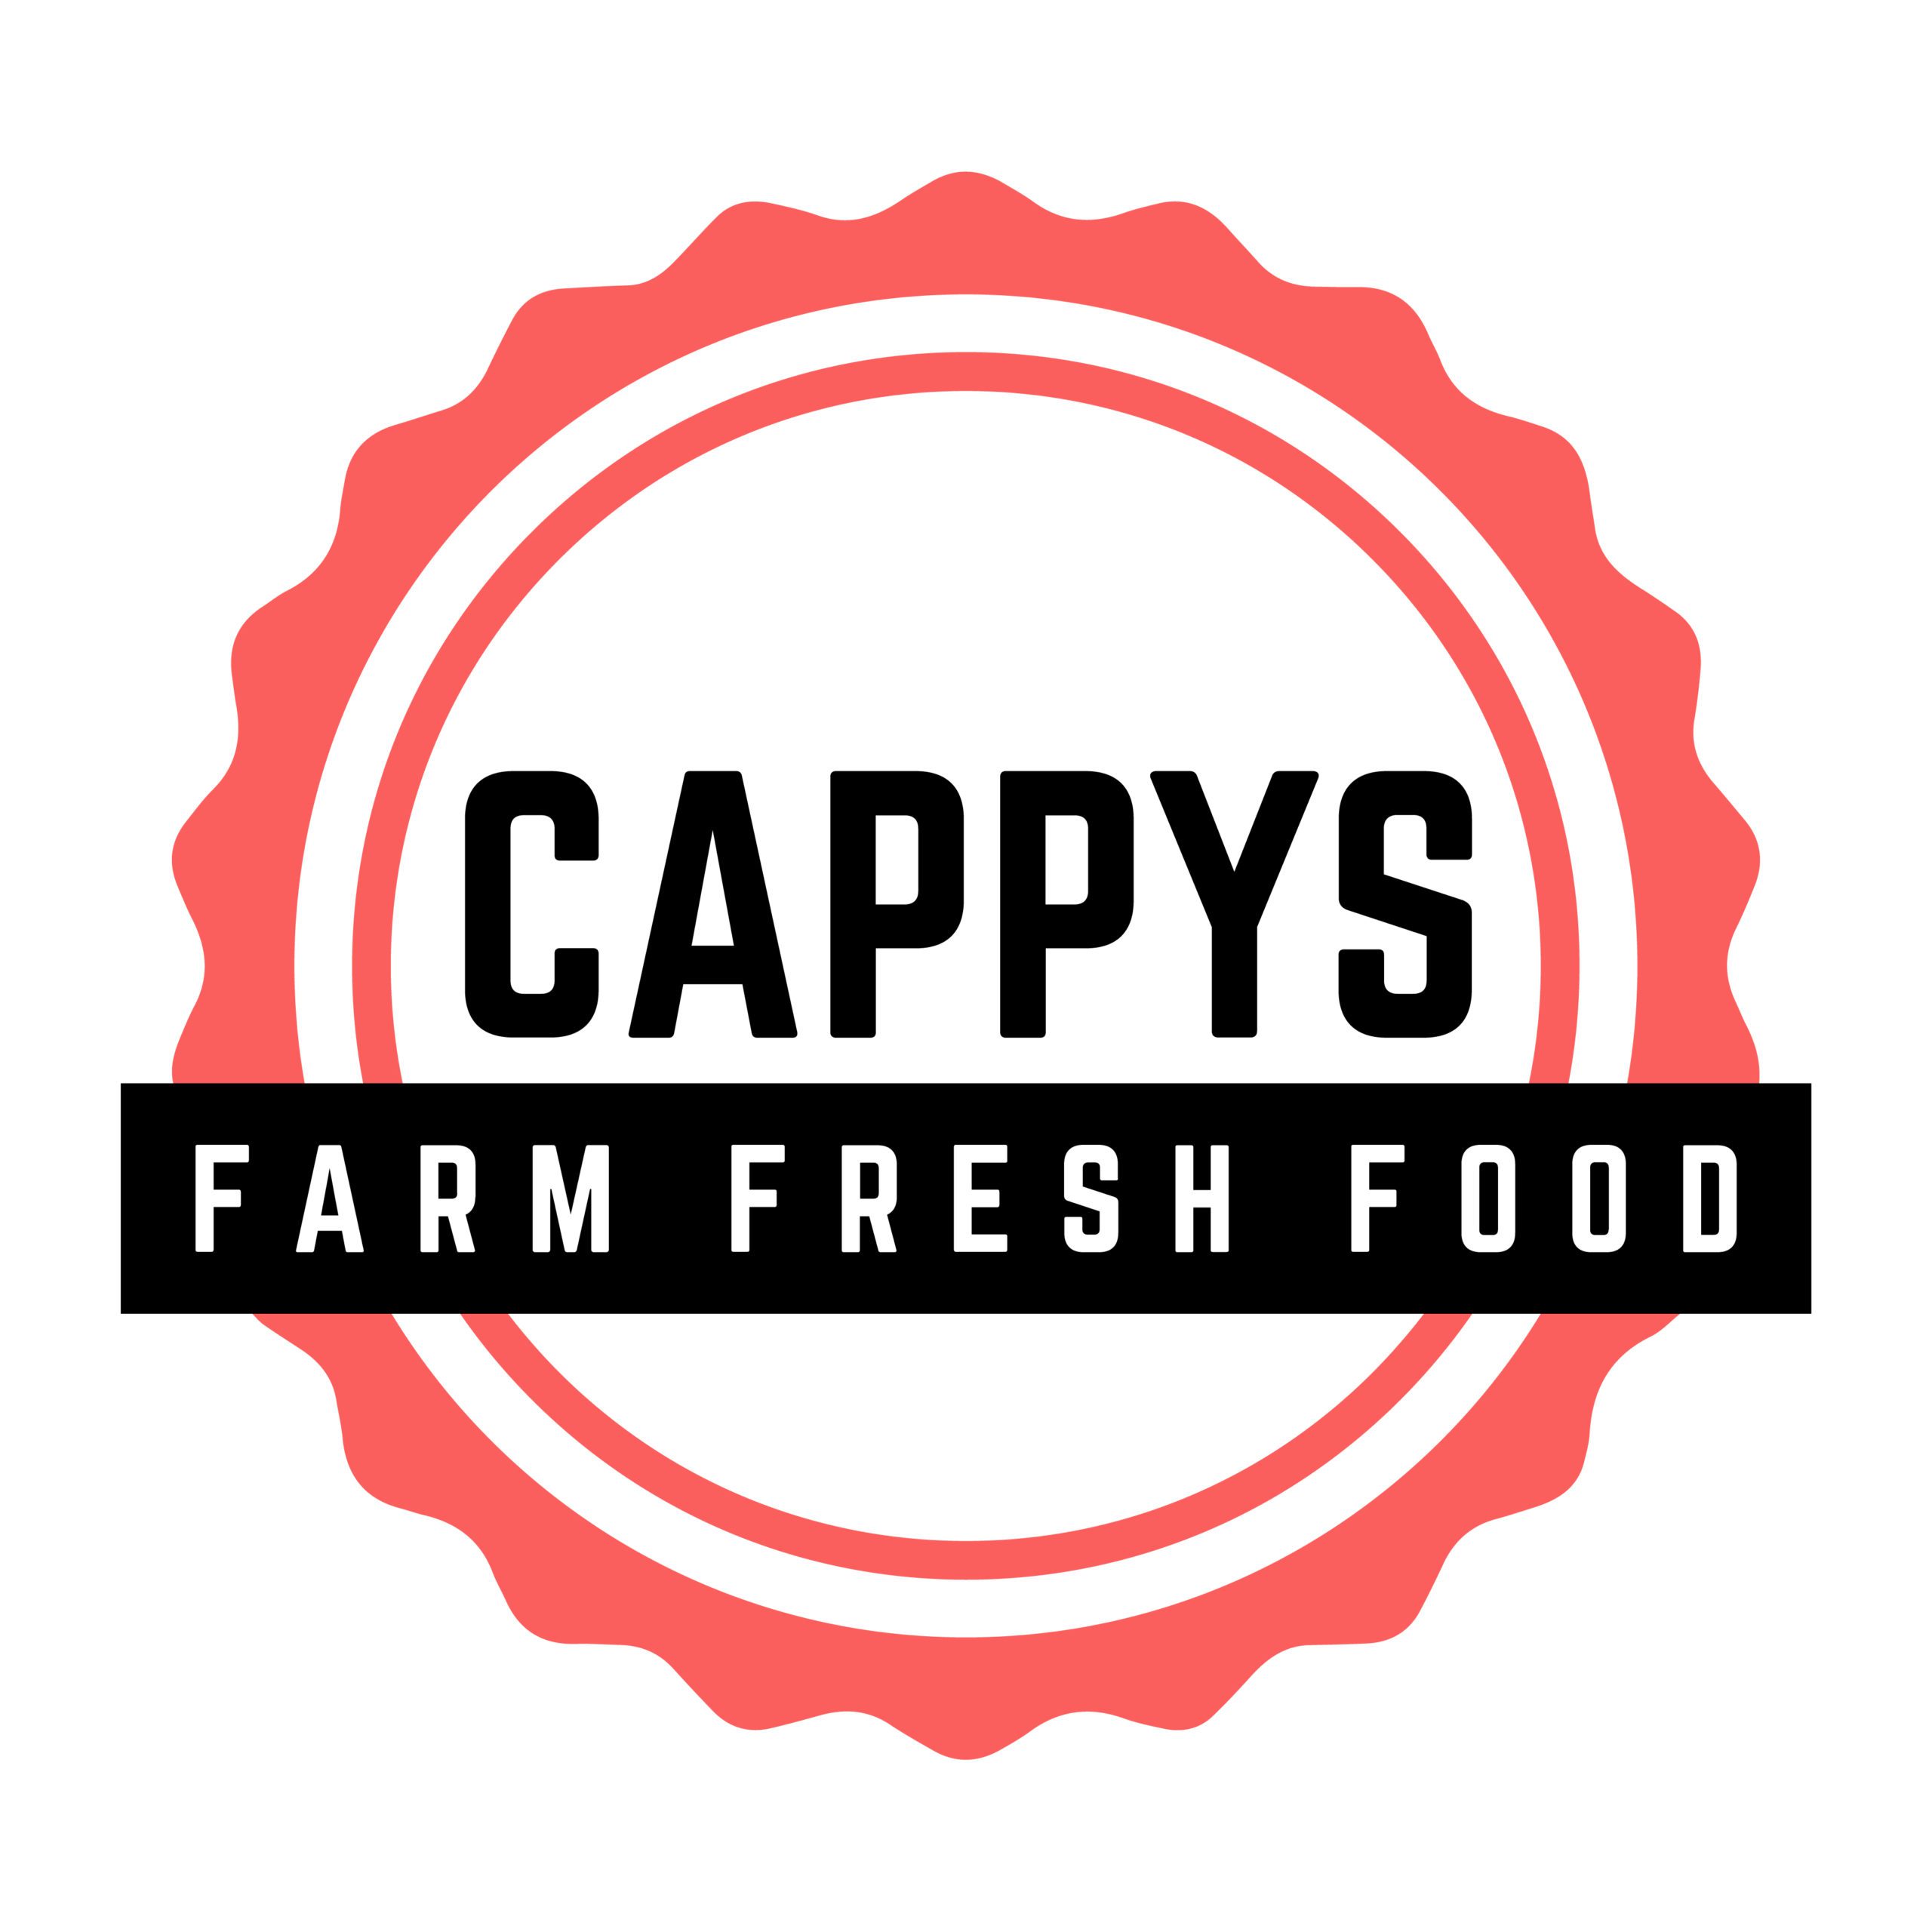 Cappys Farm Fresh Food